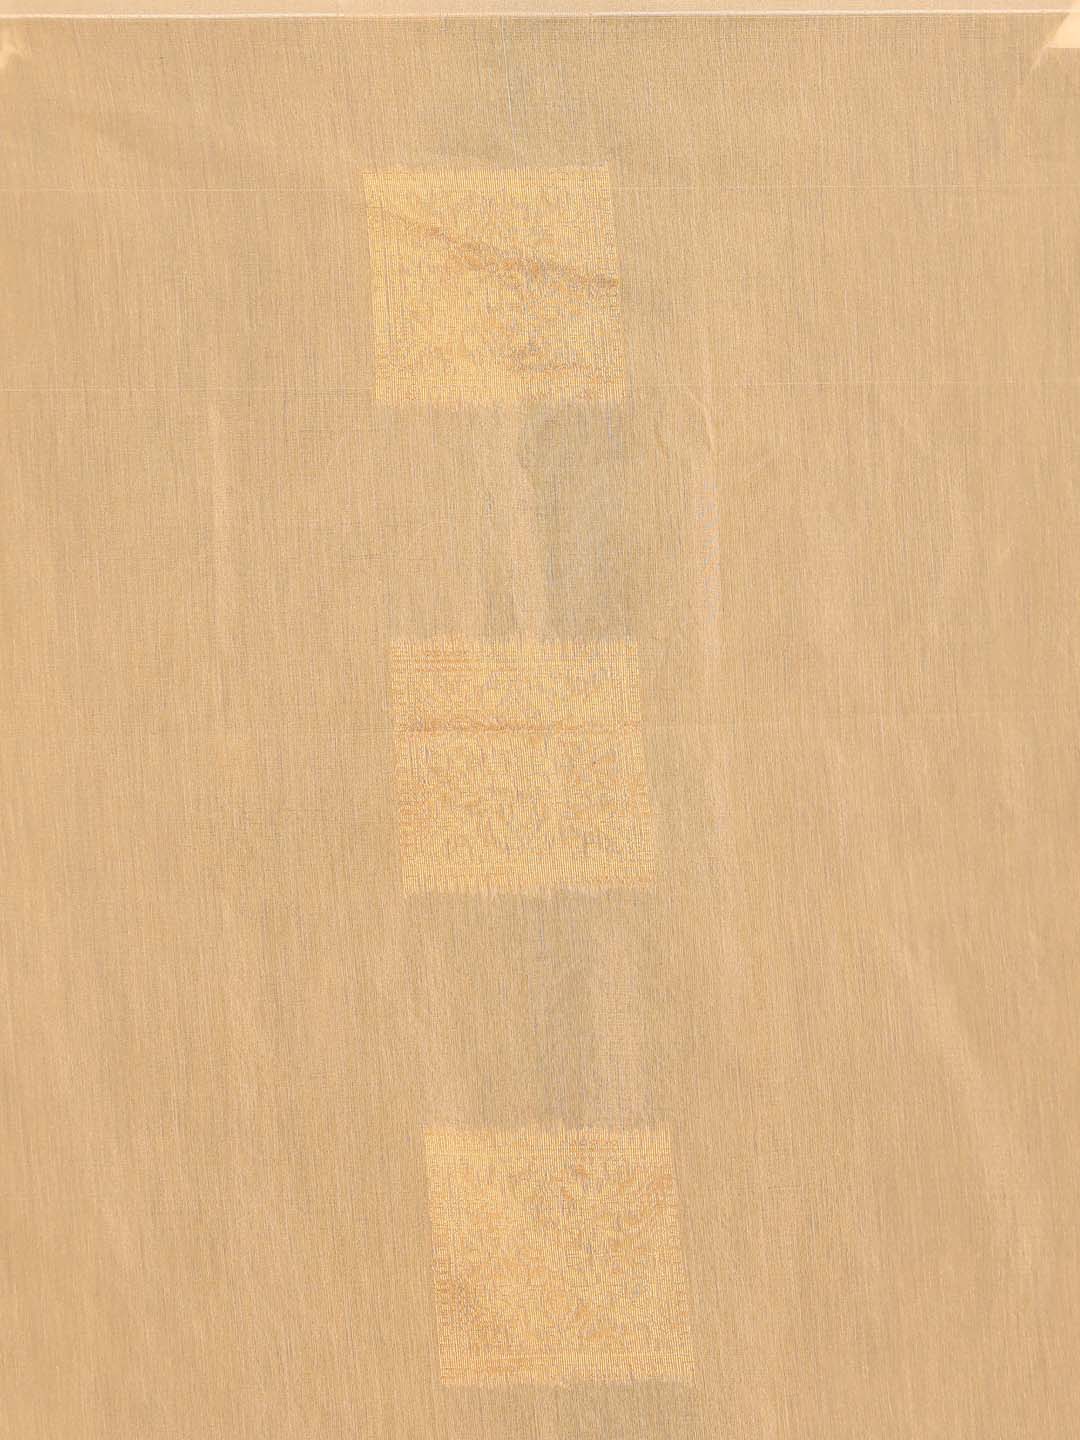 Indethnic Beige Pochampally Kora Silk by Cotton Saree - Saree Detail View